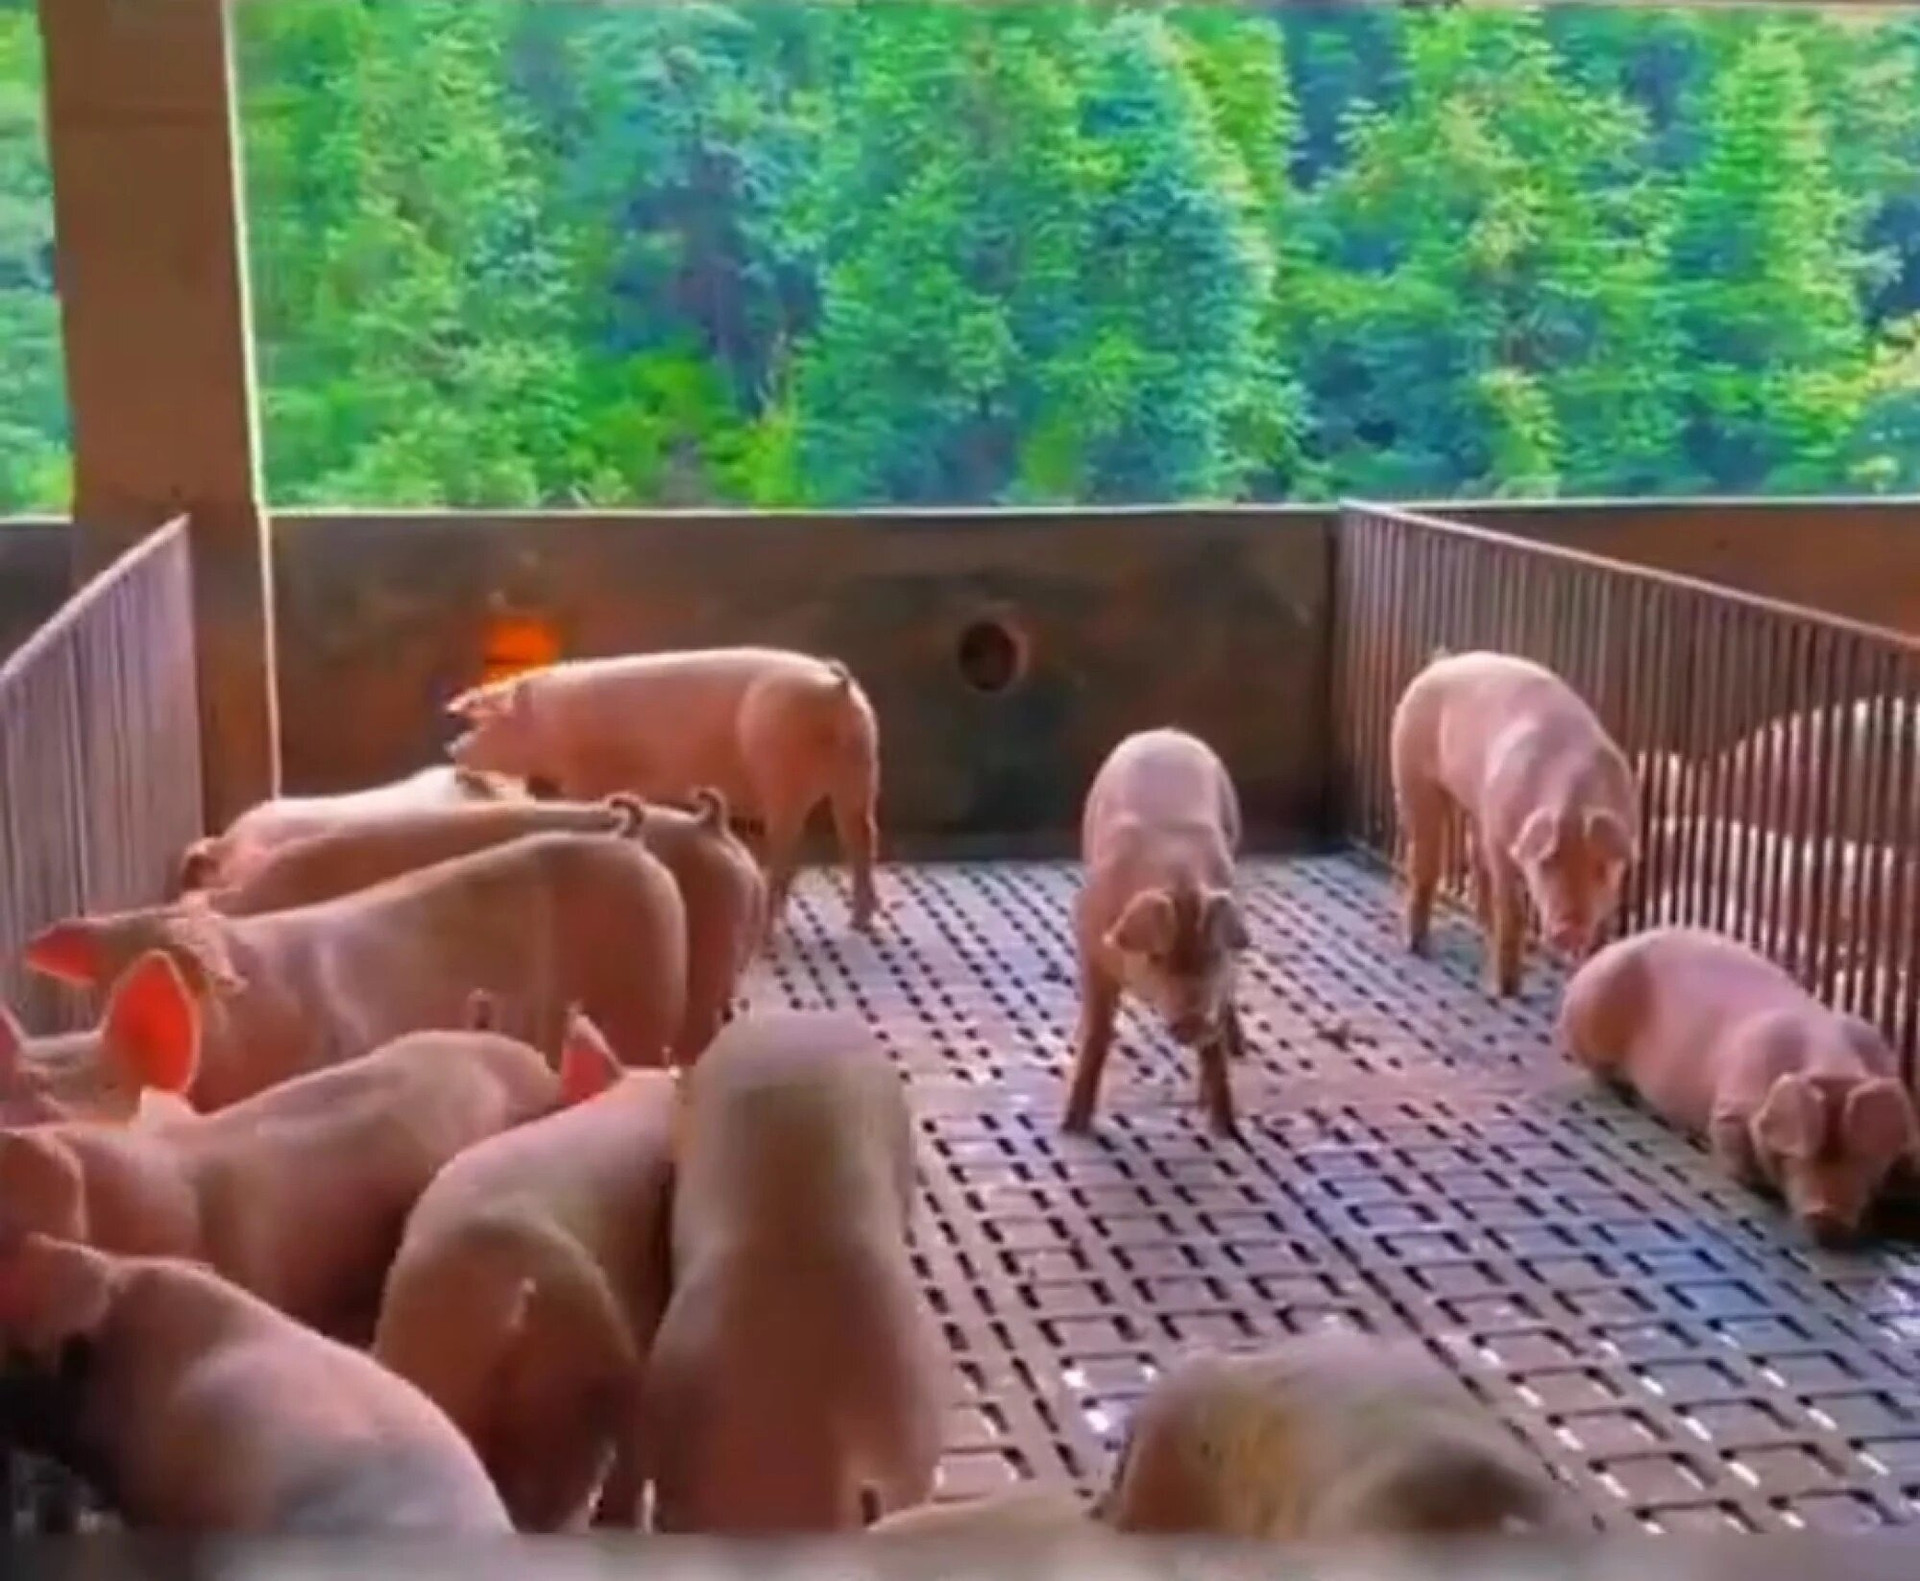 Nhờ cách bố trí hợp lý, lợn có đủ không gian để đi lại.